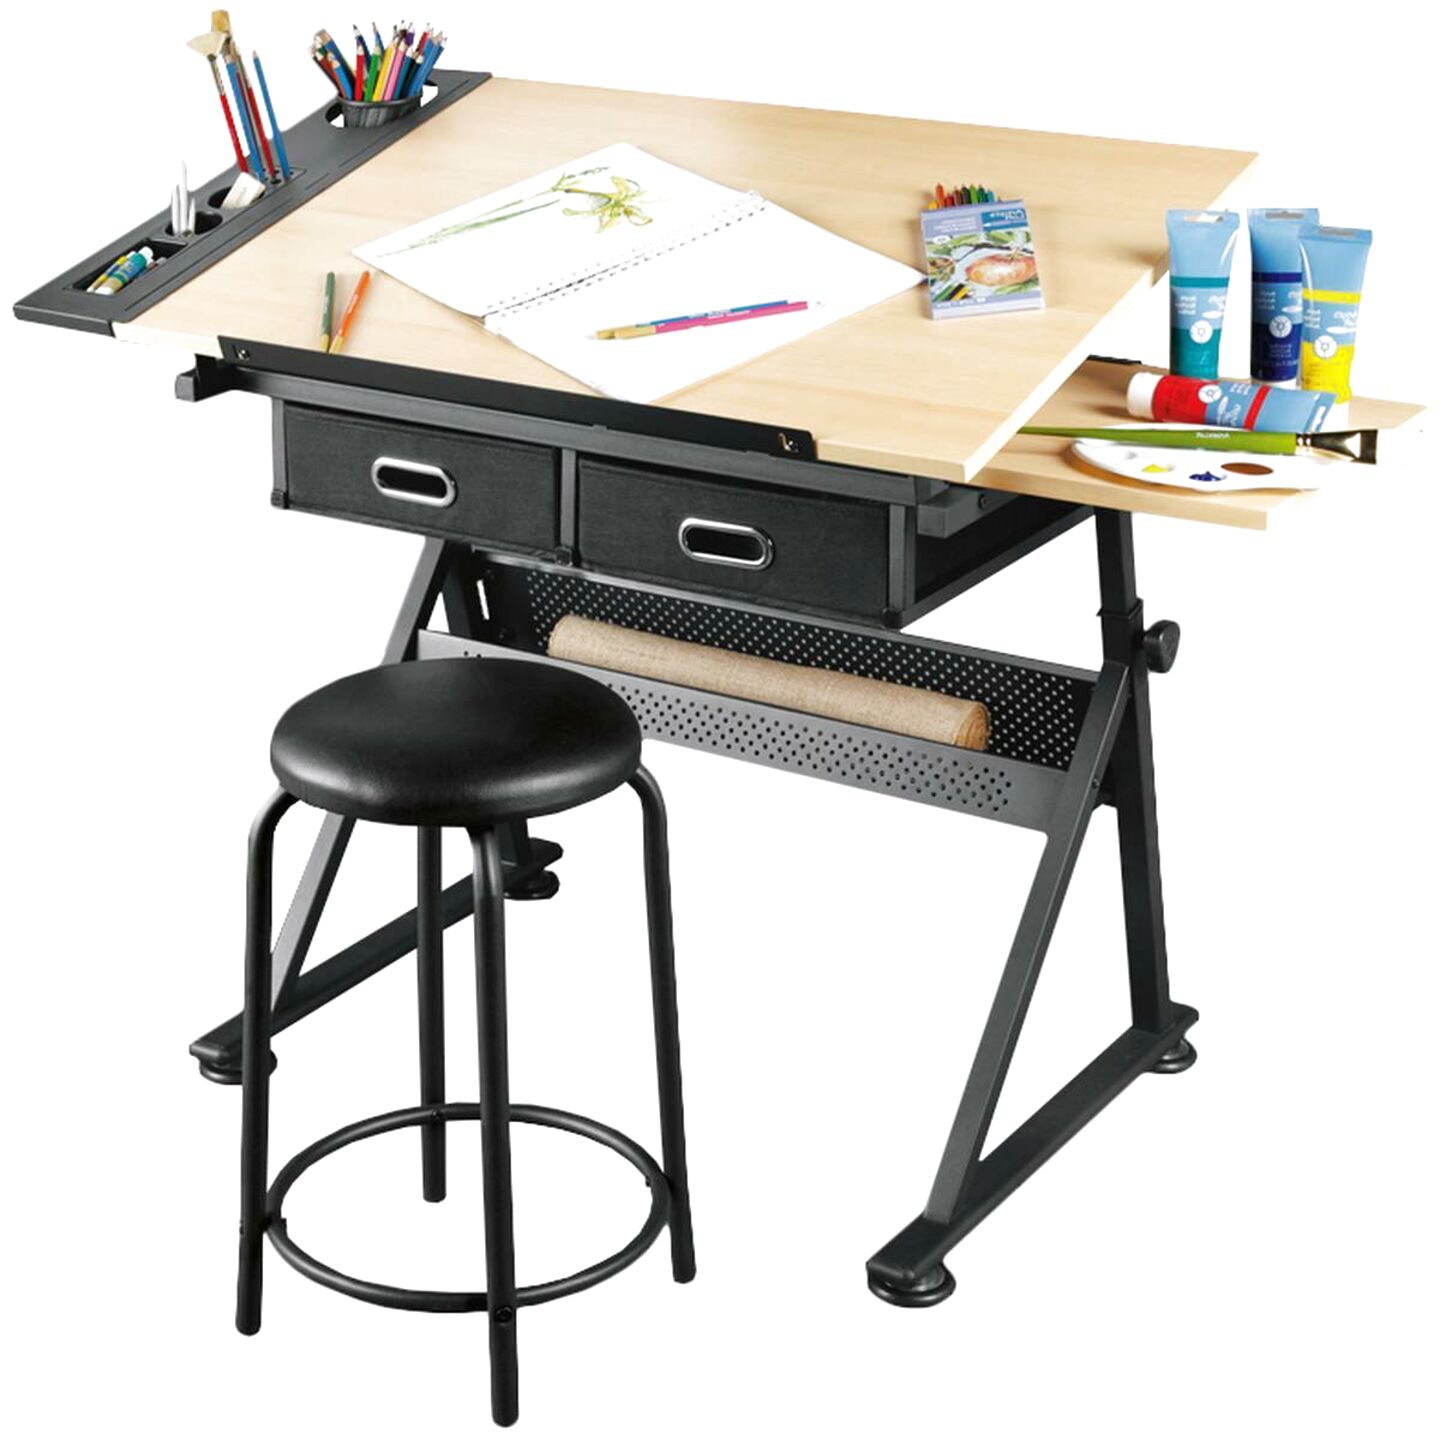 Artist Desk for sale in UK | 77 used Artist Desks